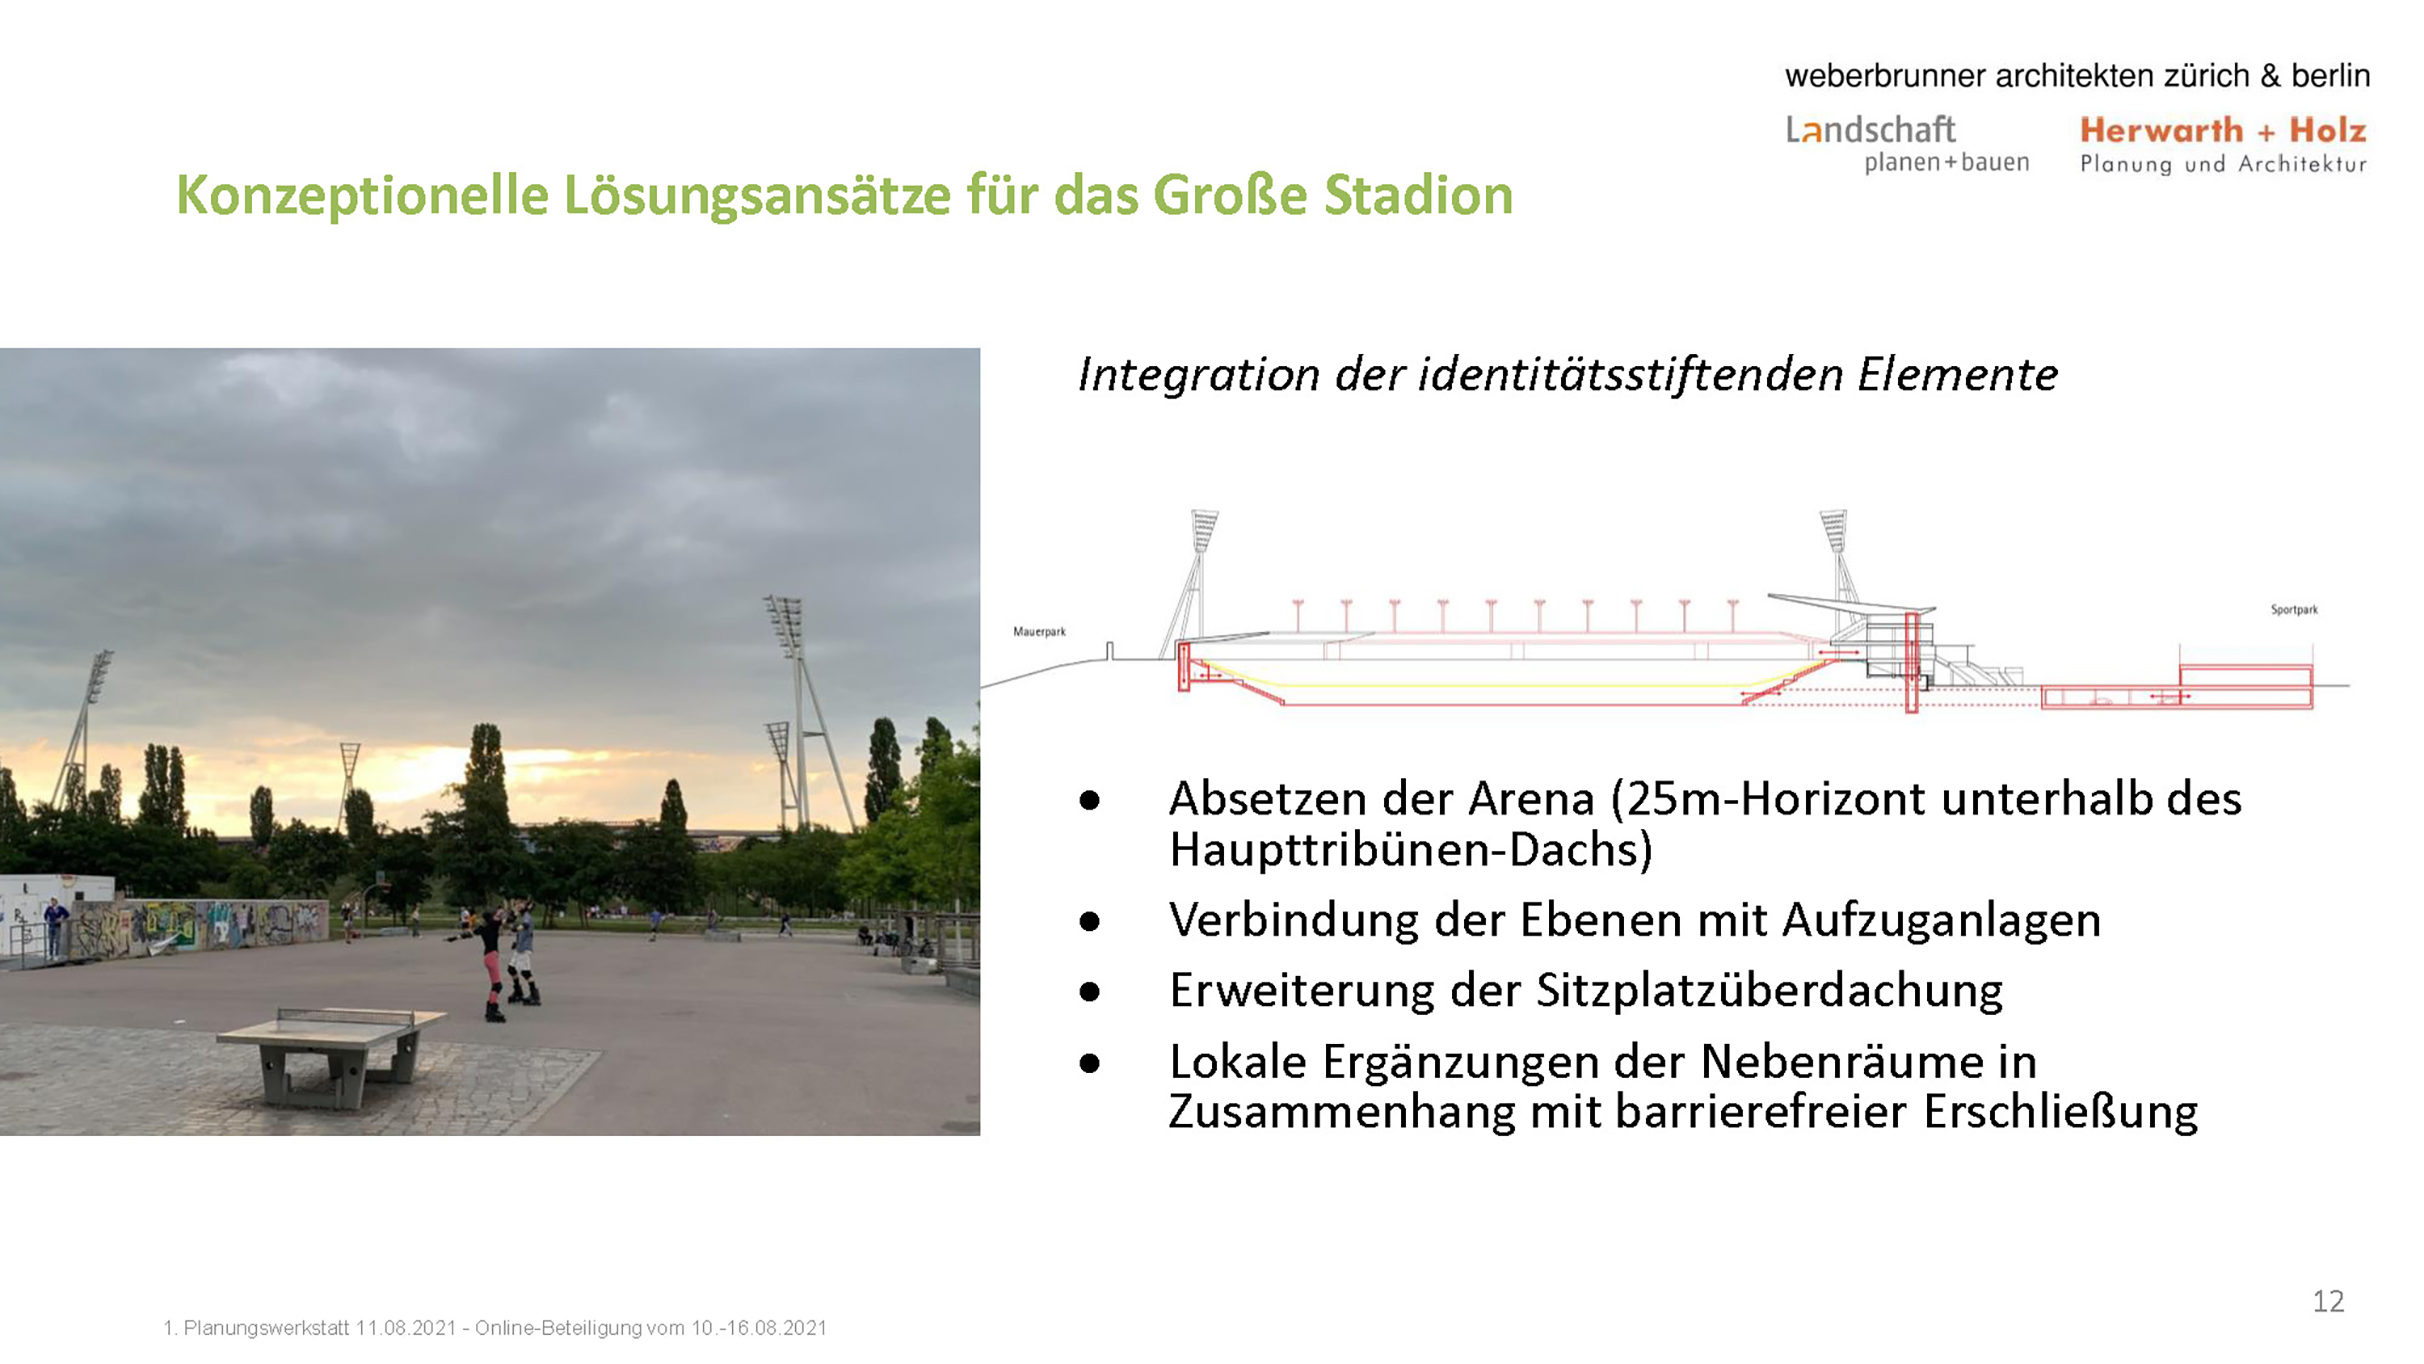 Konzeptionelle Lösungen Großes Stadion - Integration identitätsstiftende Elemente